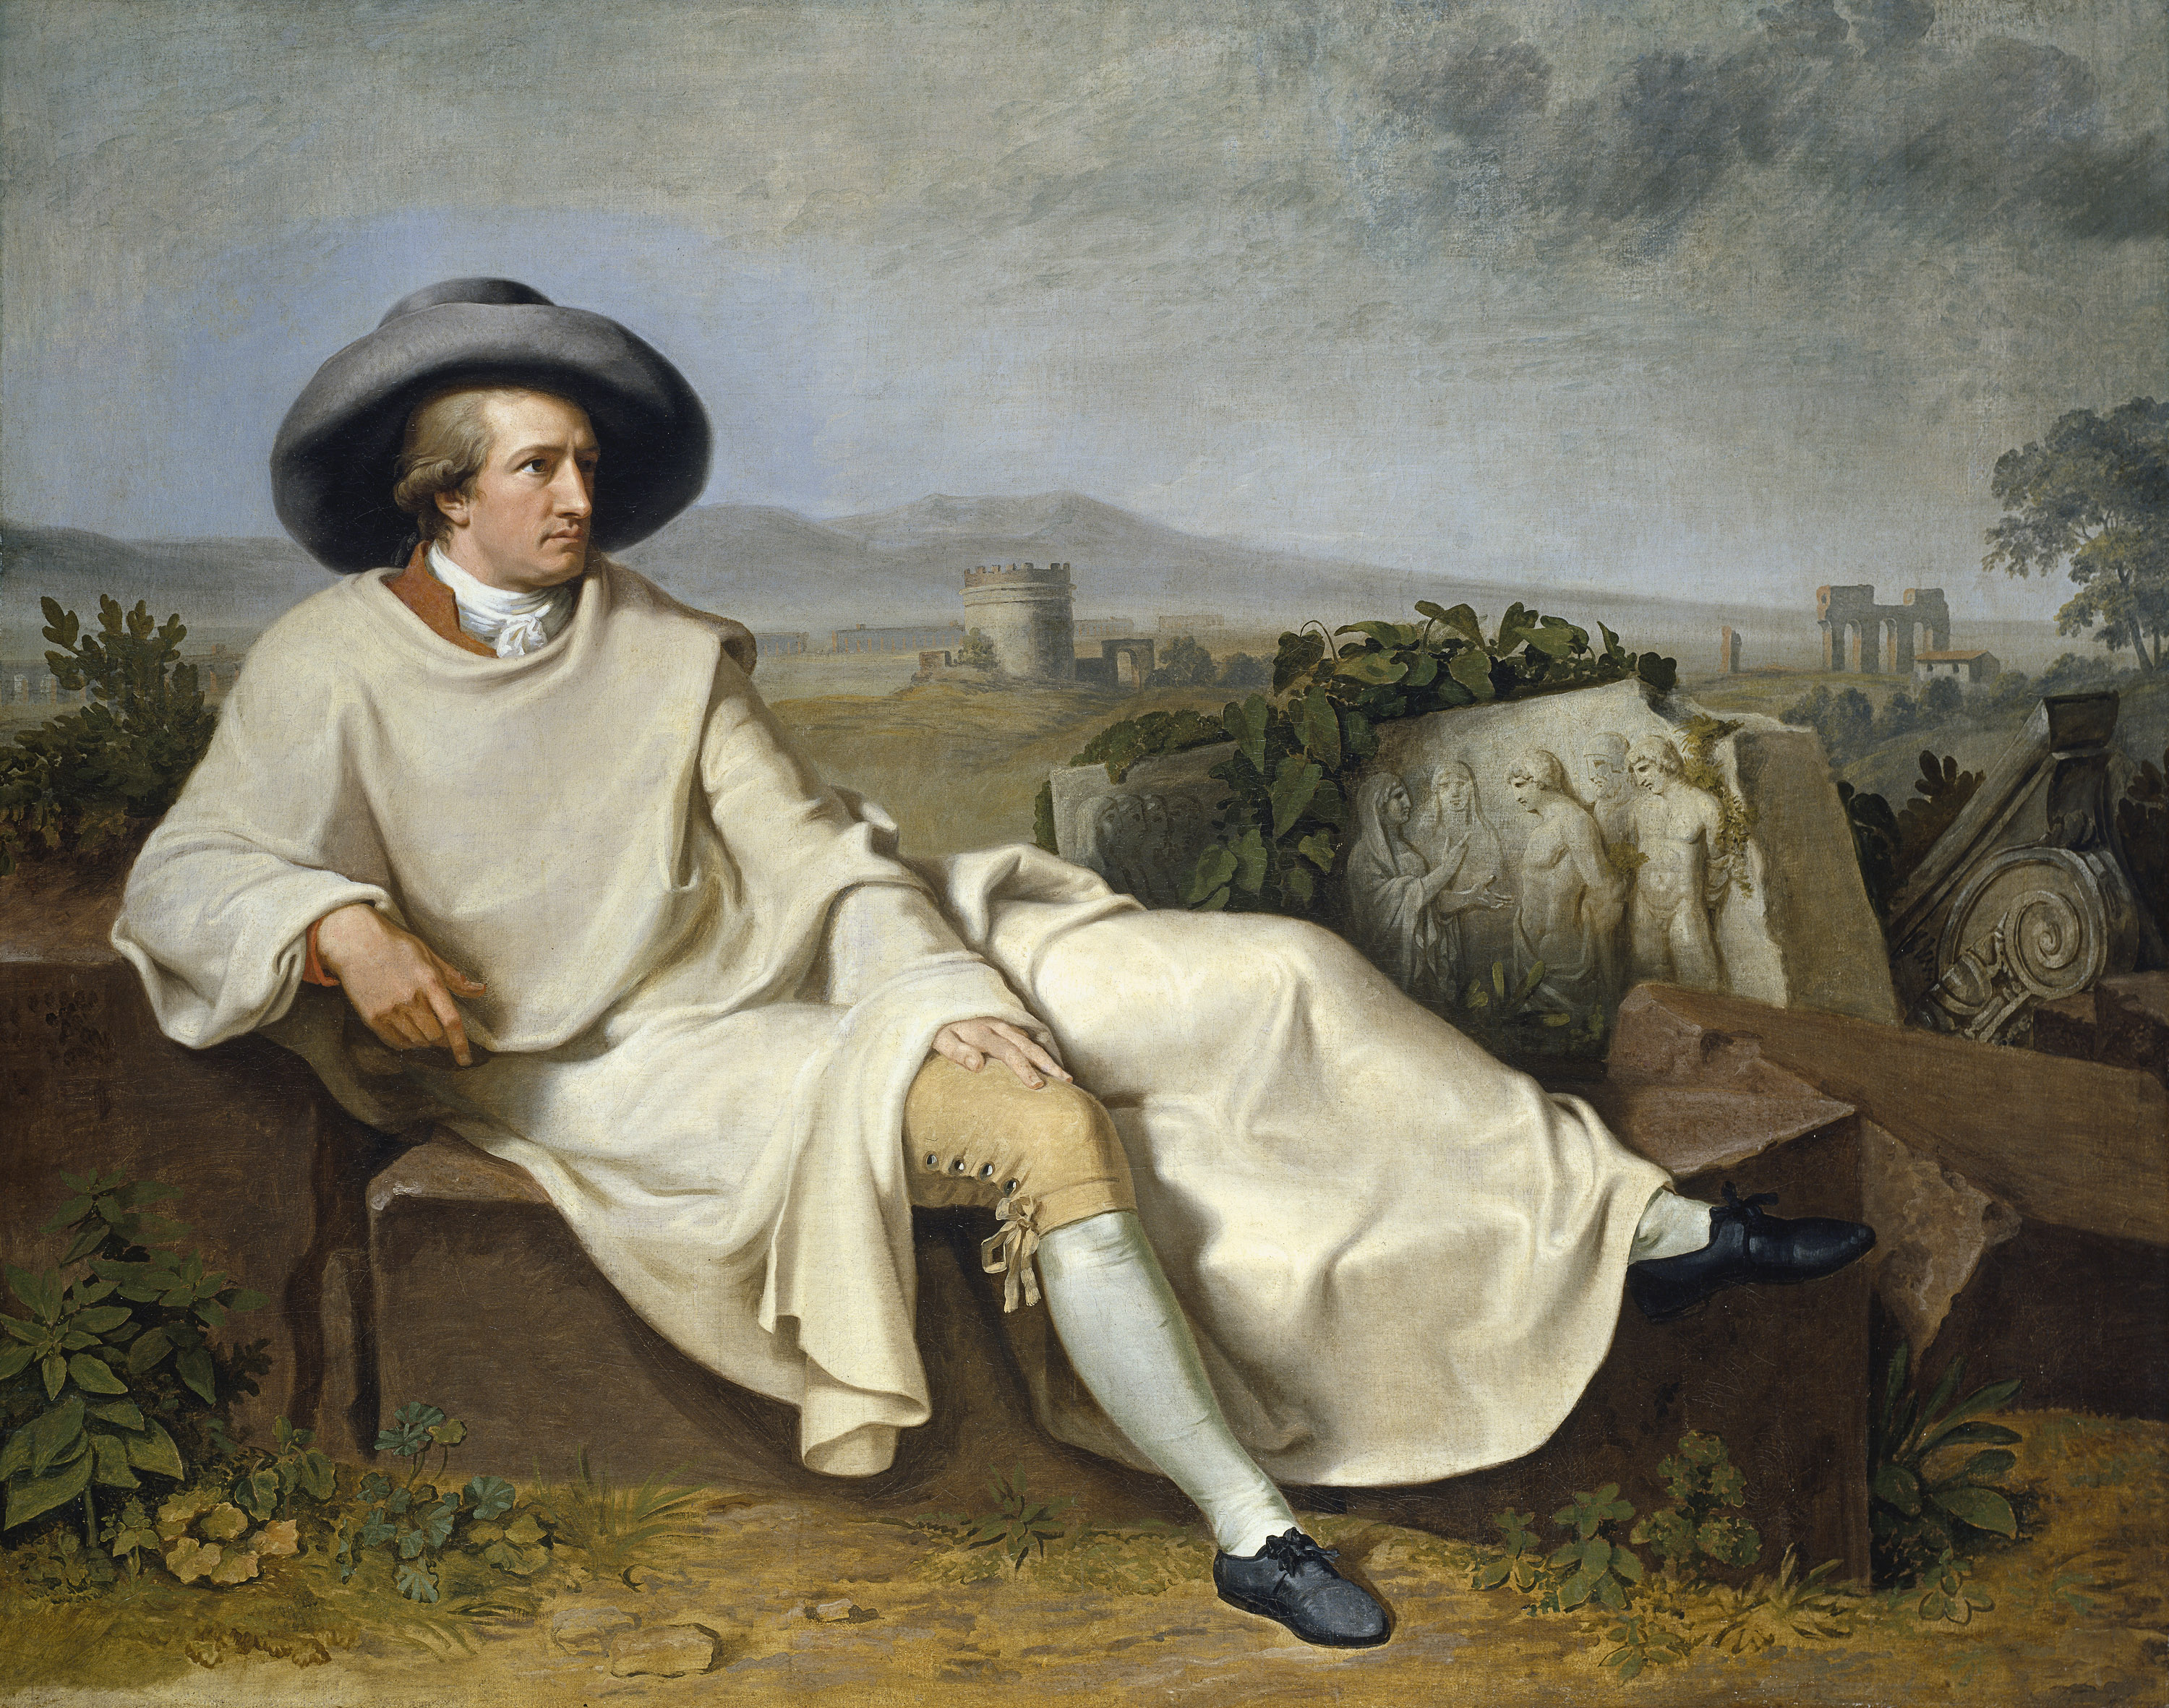 J.W.H. Tischbein, Goethe in der Campagna, 1787